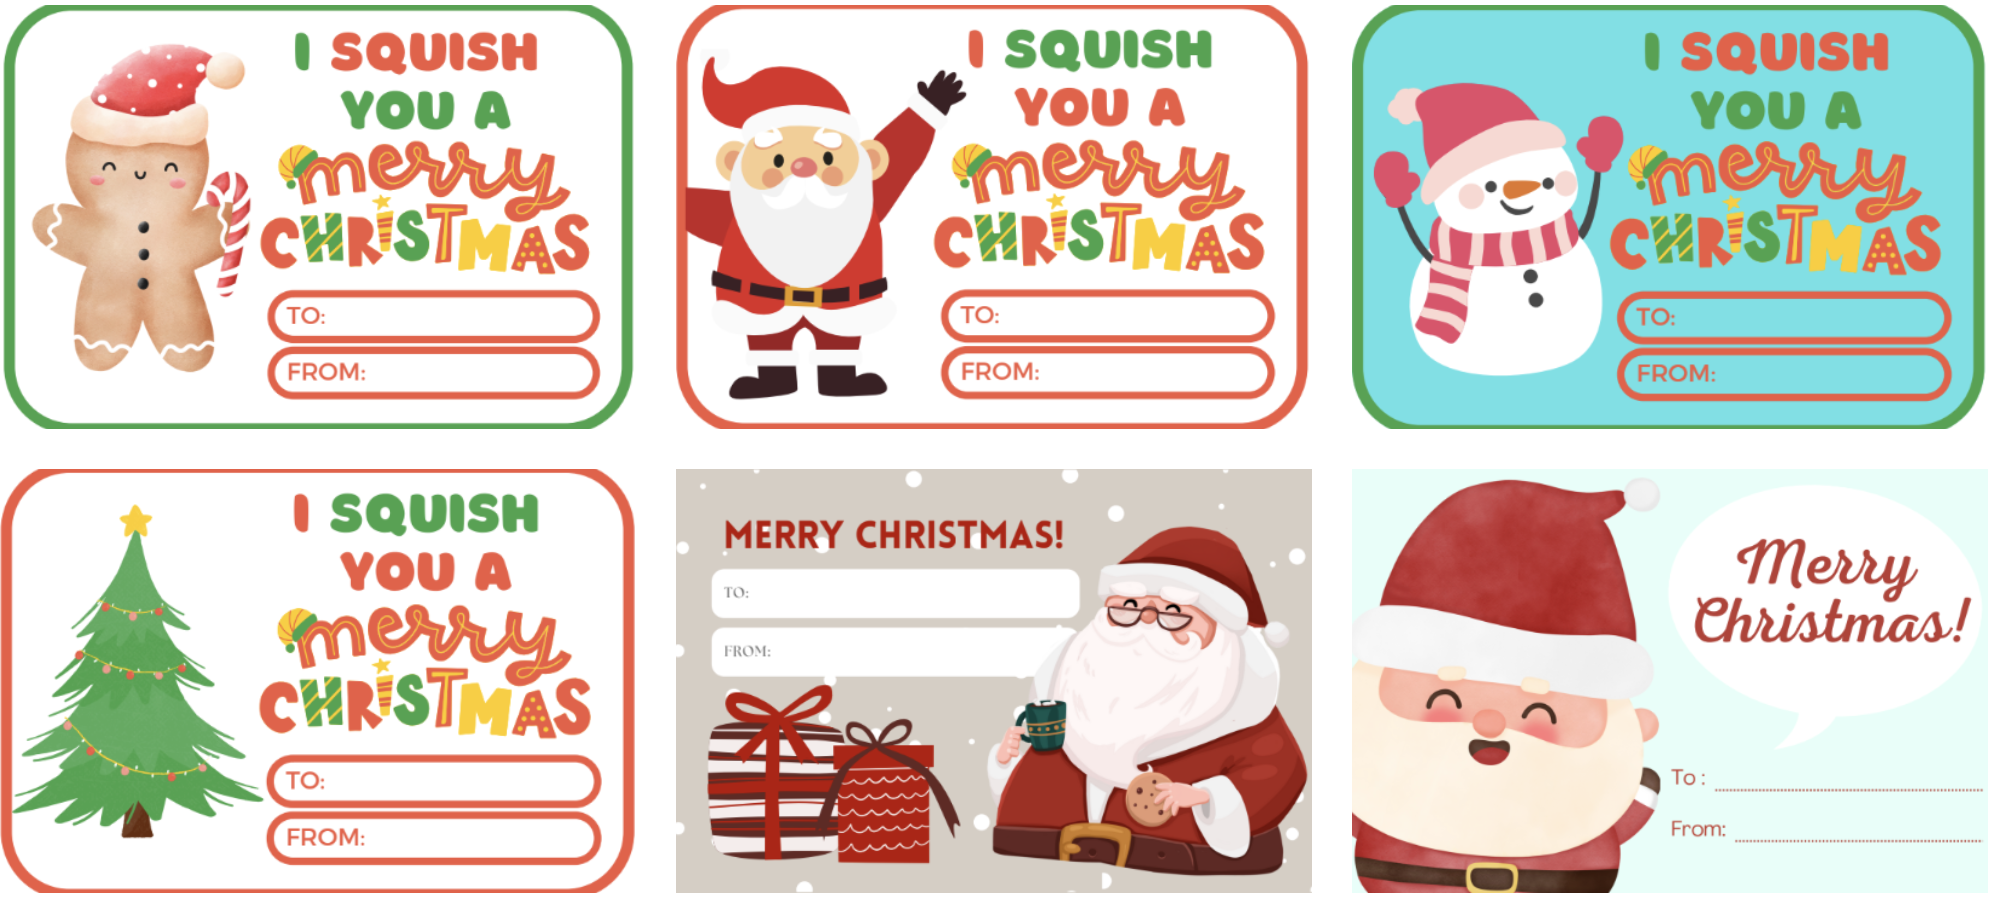 Free Printable Christmas Gift Tags for Christmas Squishies